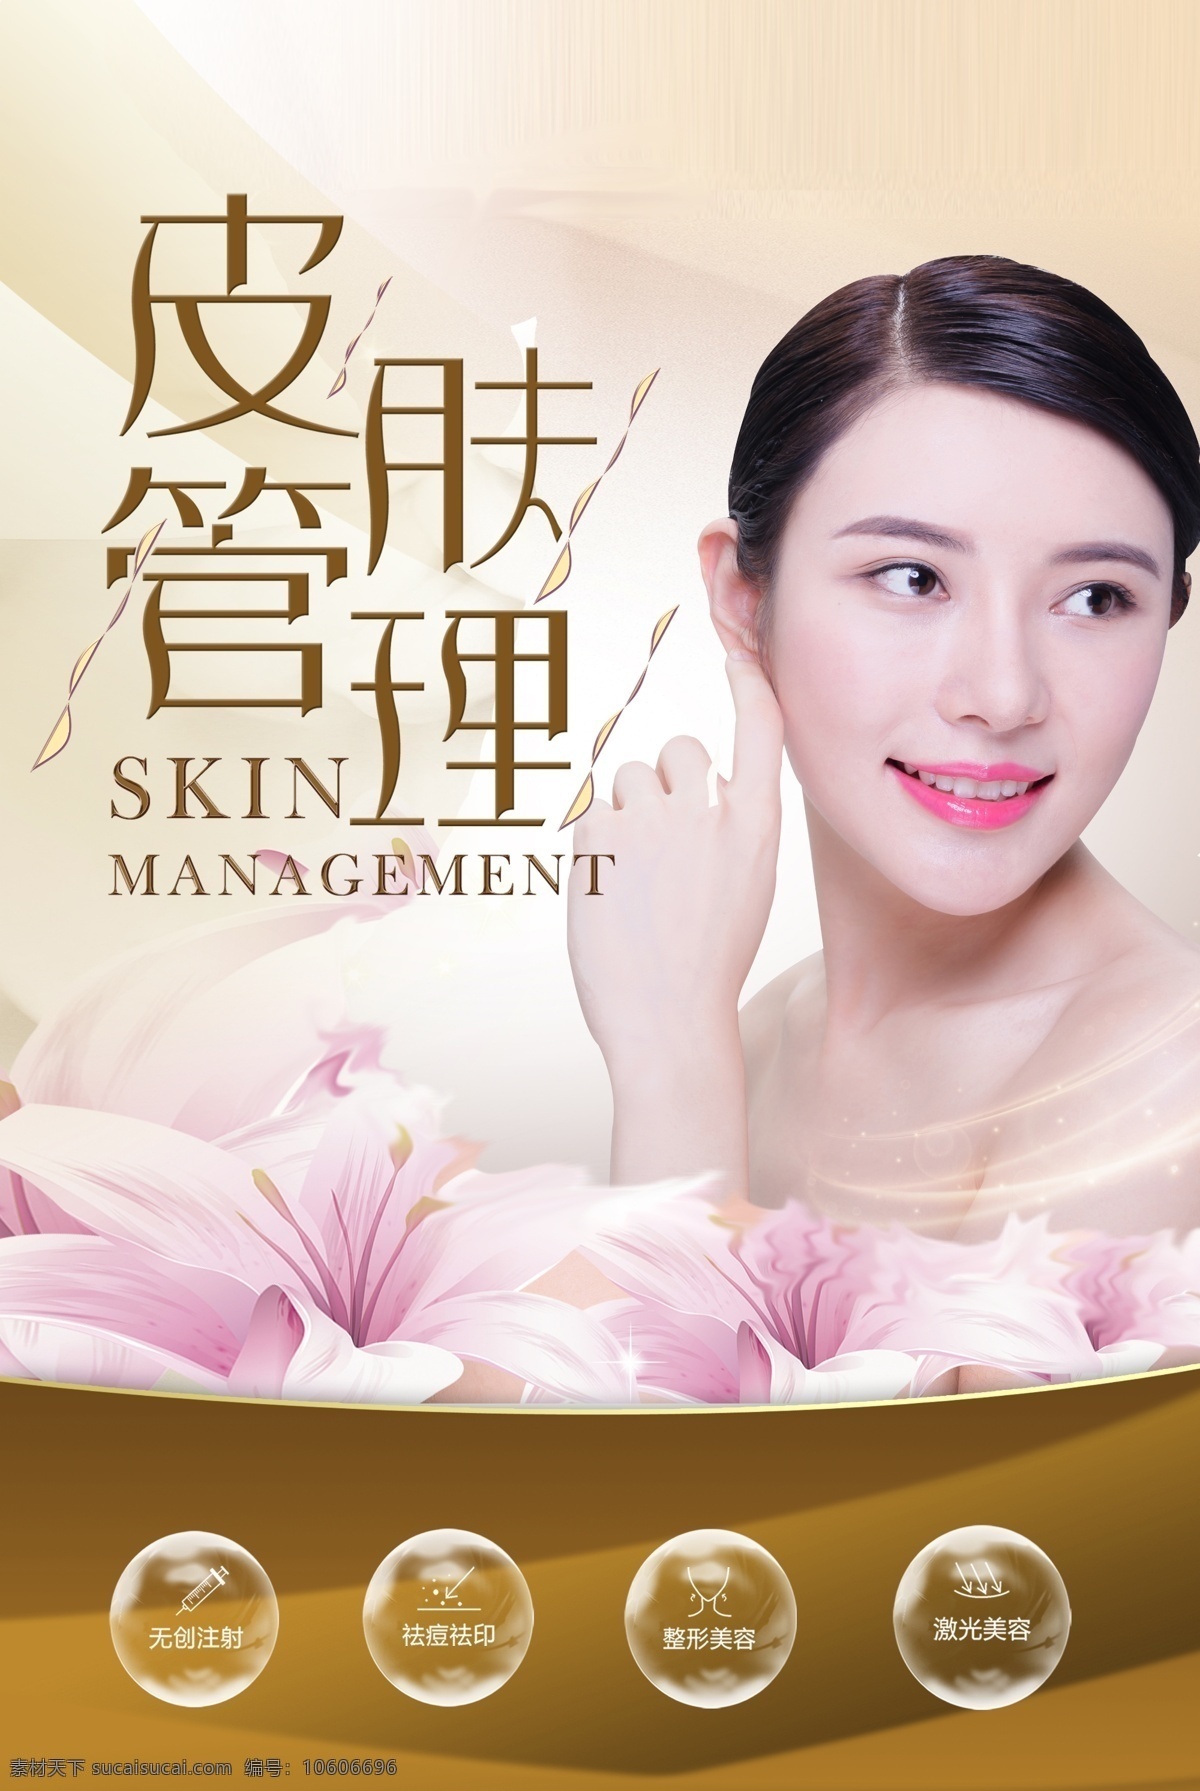 皮肤 管理 美容 海报 美女 女人 美肤 护肤 保养 皮肤护理 肤质管理 美白 脸部保养 美容海报